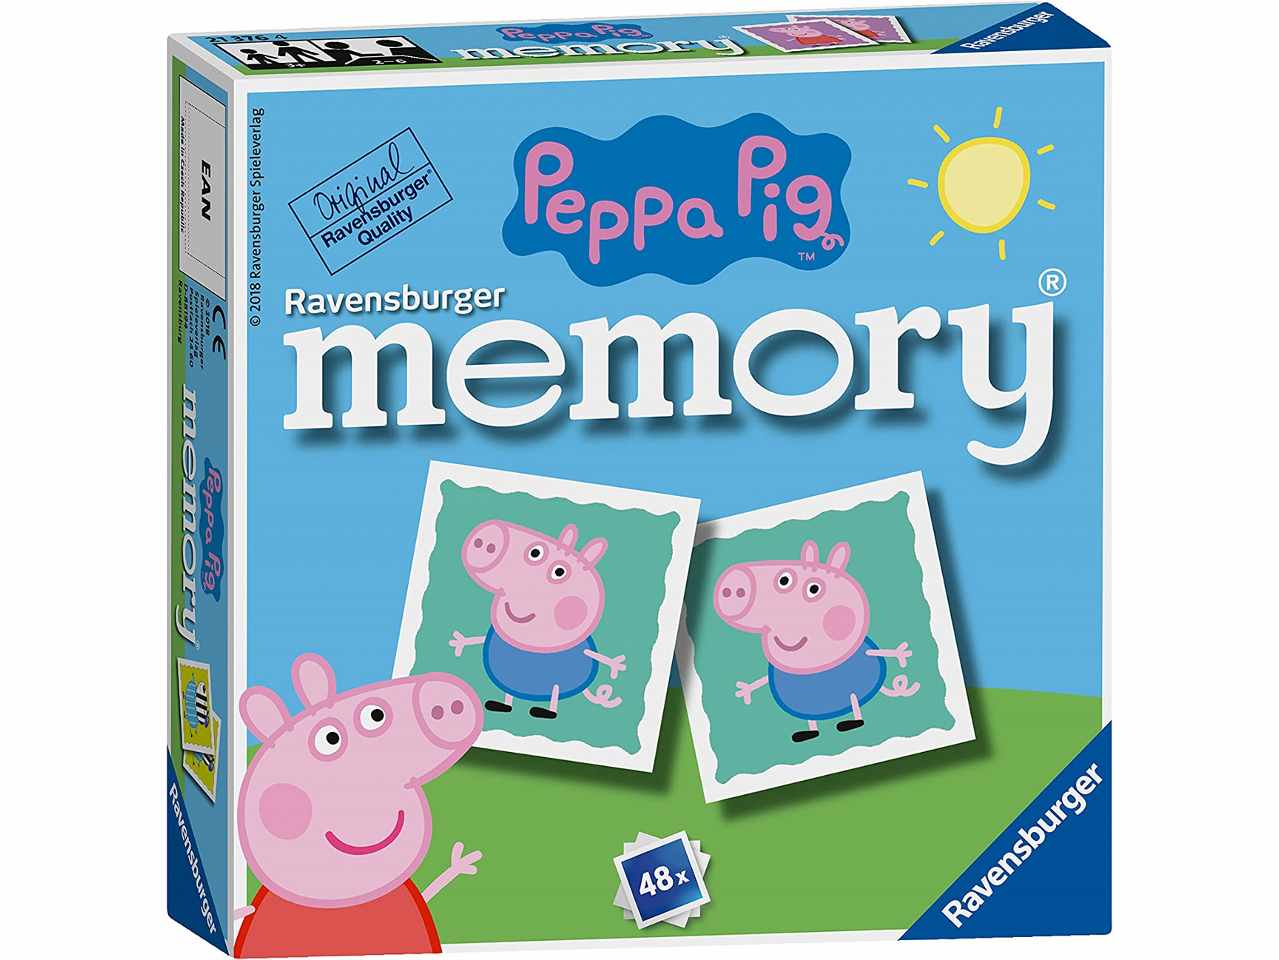 Mini memory peppa pig